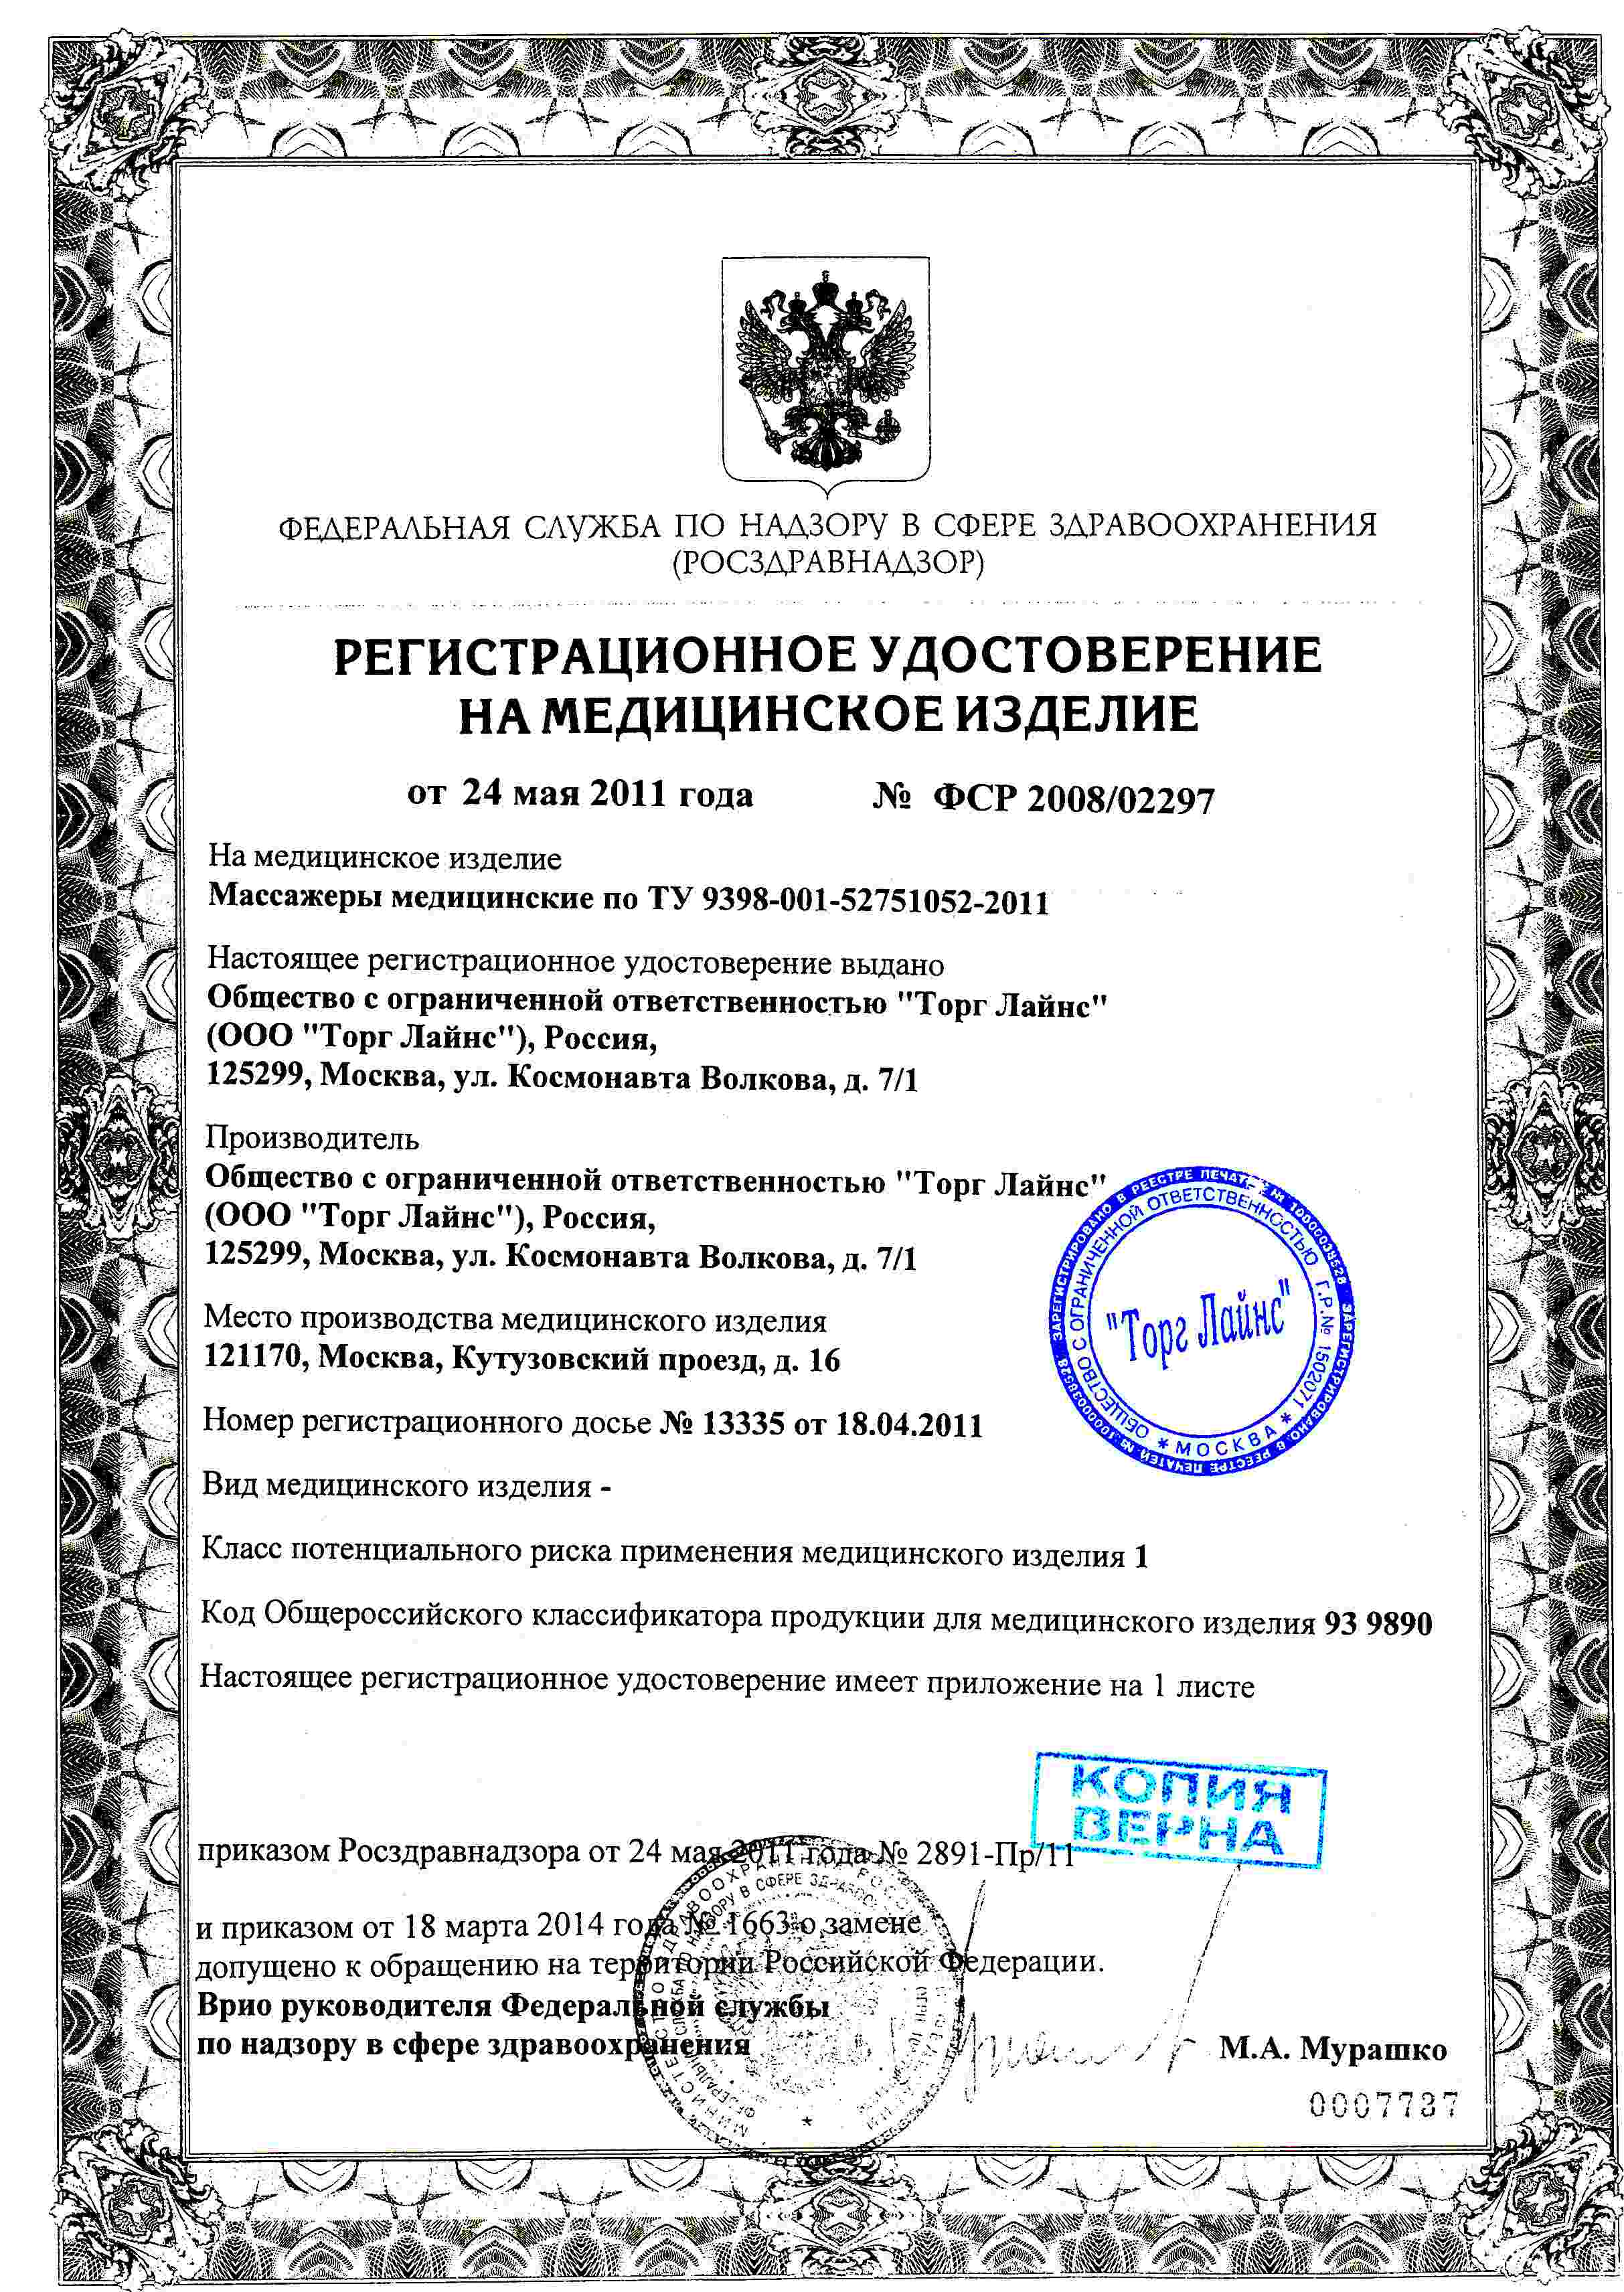 Сертификат доп №2